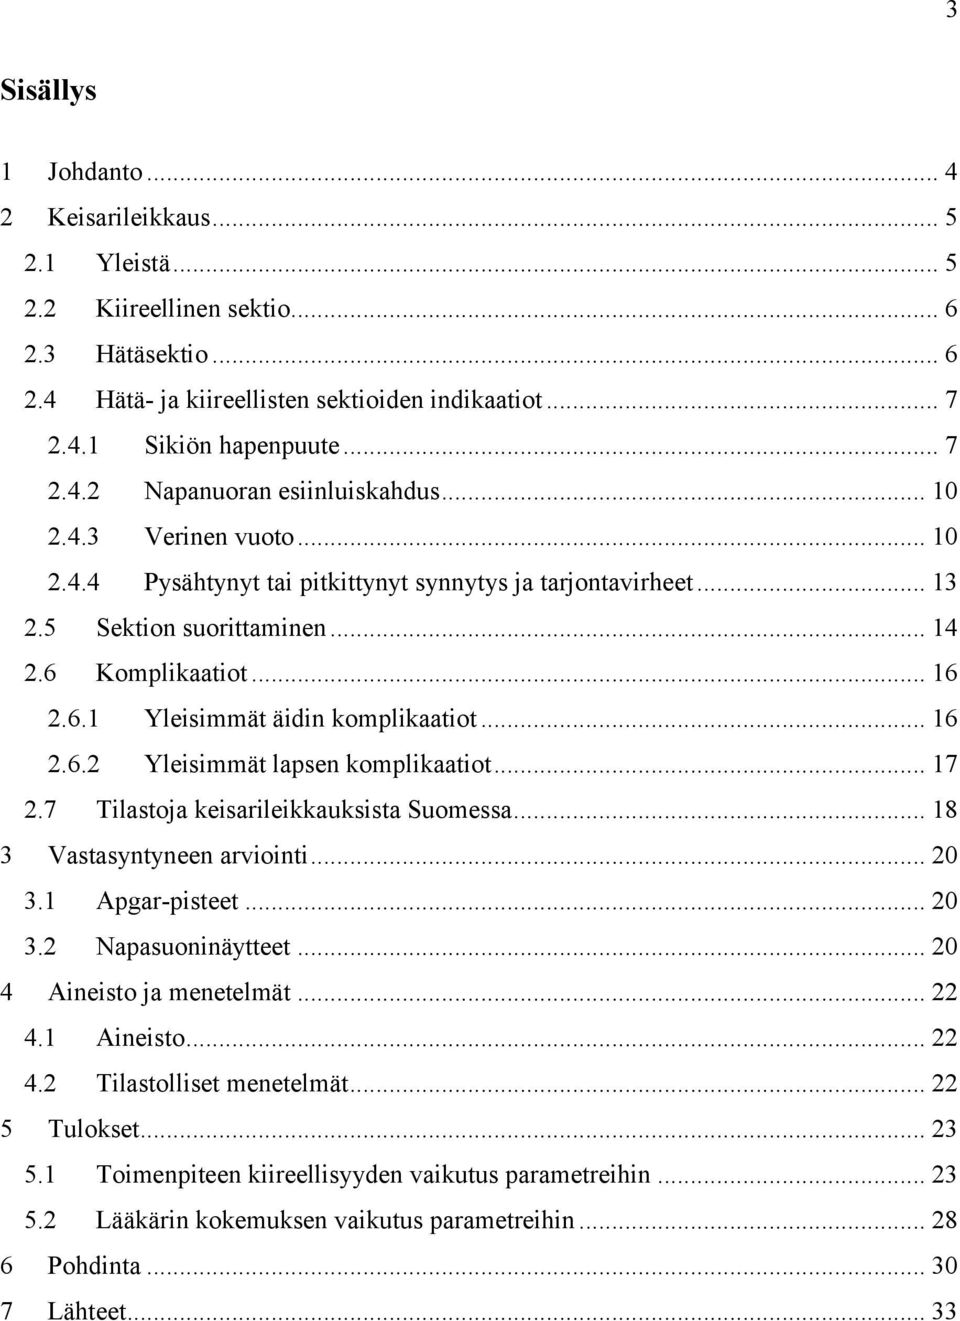 .. 17 2.7 Tilastoja keisarileikkauksista Suomessa... 18 3 Vastasyntyneen arviointi... 20 3.1 Apgar-pisteet... 20 3.2 Napasuoninäytteet... 20 4 Aineisto ja menetelmät... 22 4.